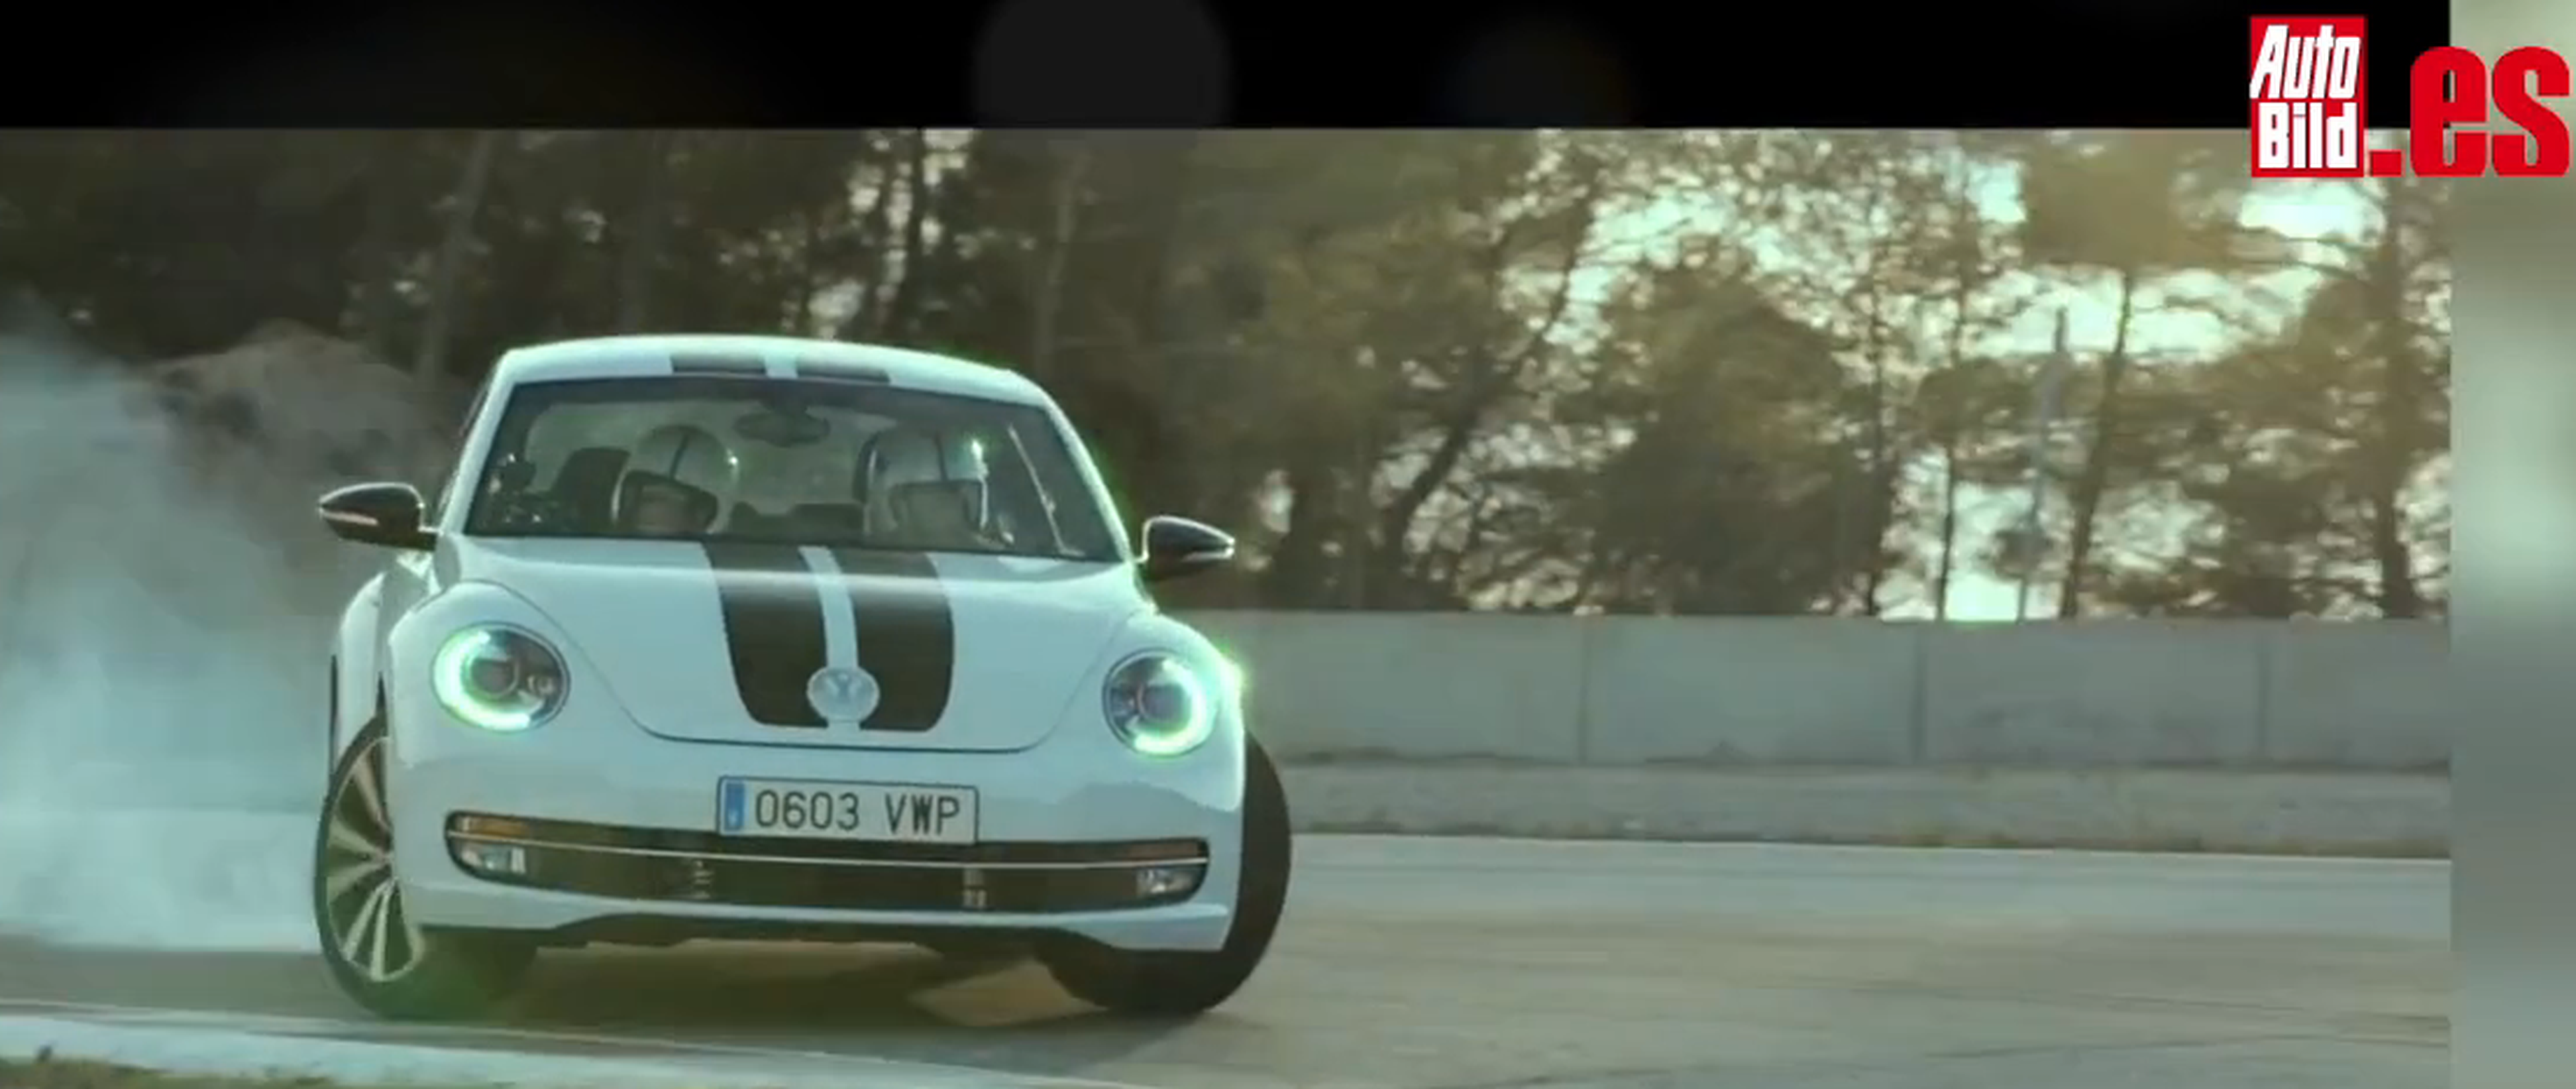 VÍDEO: Reto Volkswagen Beetle con los ojos vendados, ¿acertará?